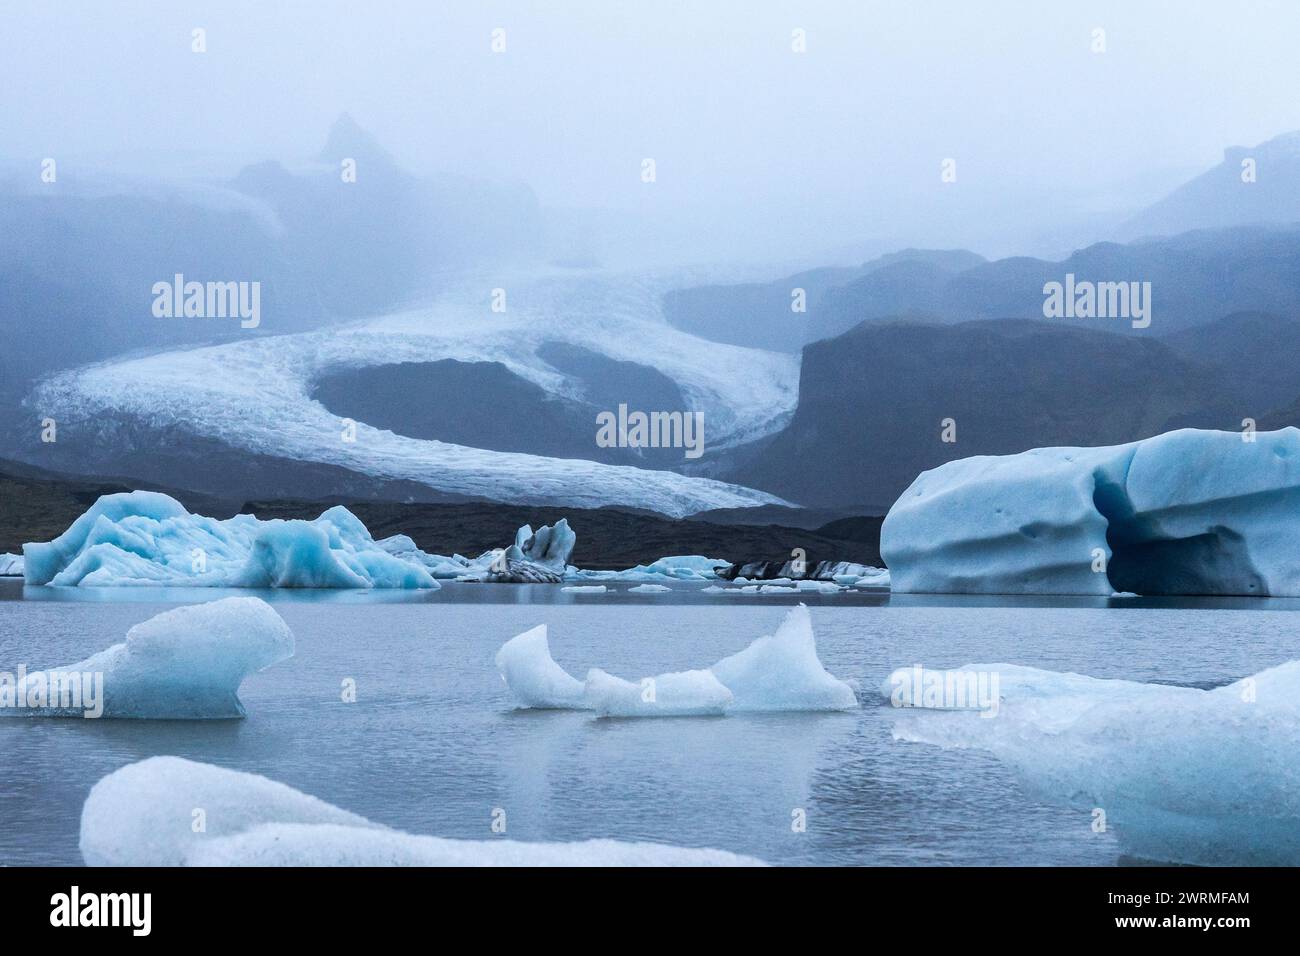 Eisberge treiben in den stillen Gewässern einer Gletscherlagune mit Vatnajokulls in Nebel gehülltem Eisschild und fangen Islands ätherische Schönheit ein Stockfoto